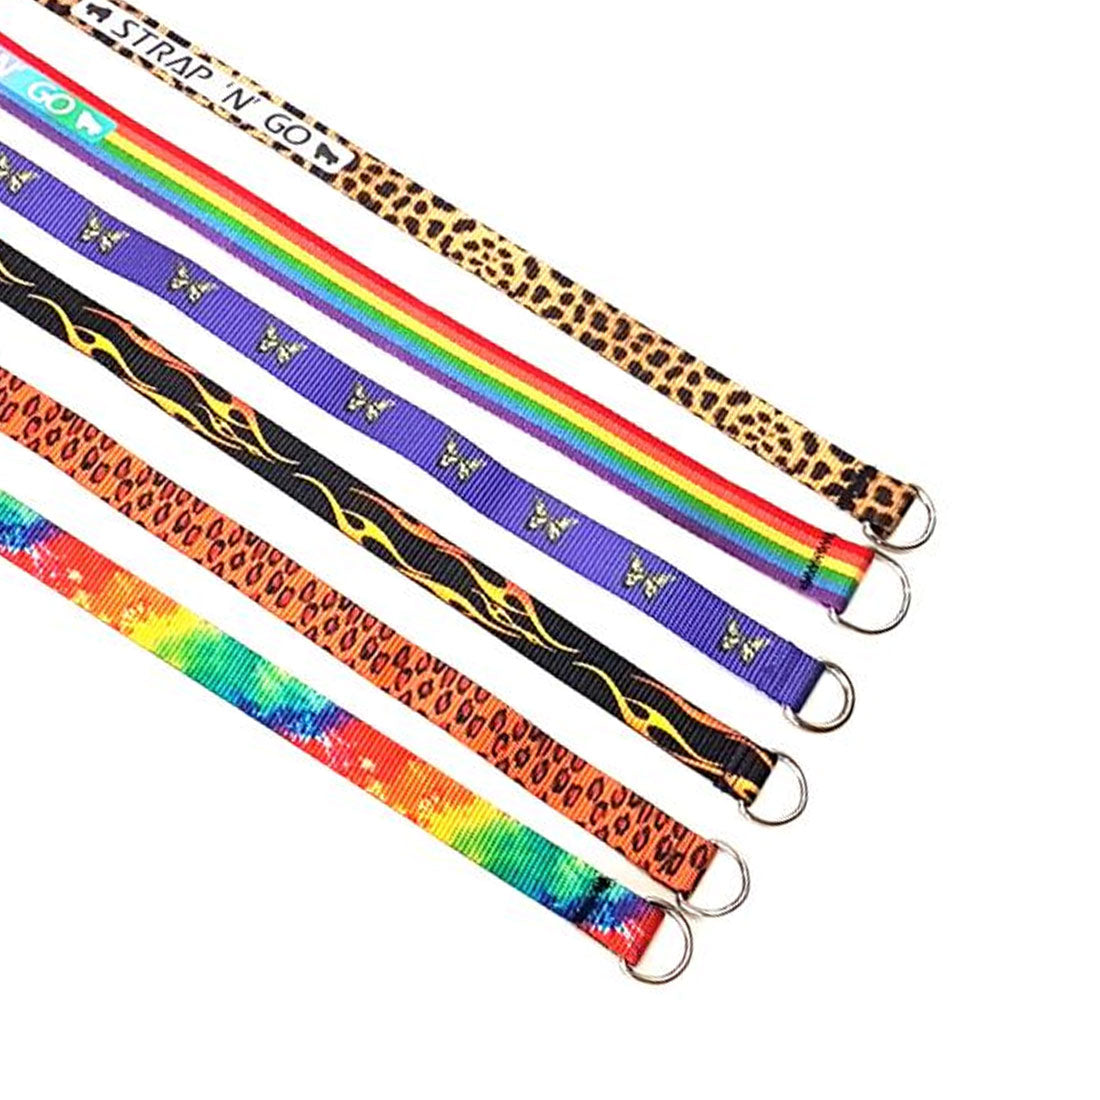 Strap N Go Skate Noose/Leash - Patterns Roller Skate Accessories